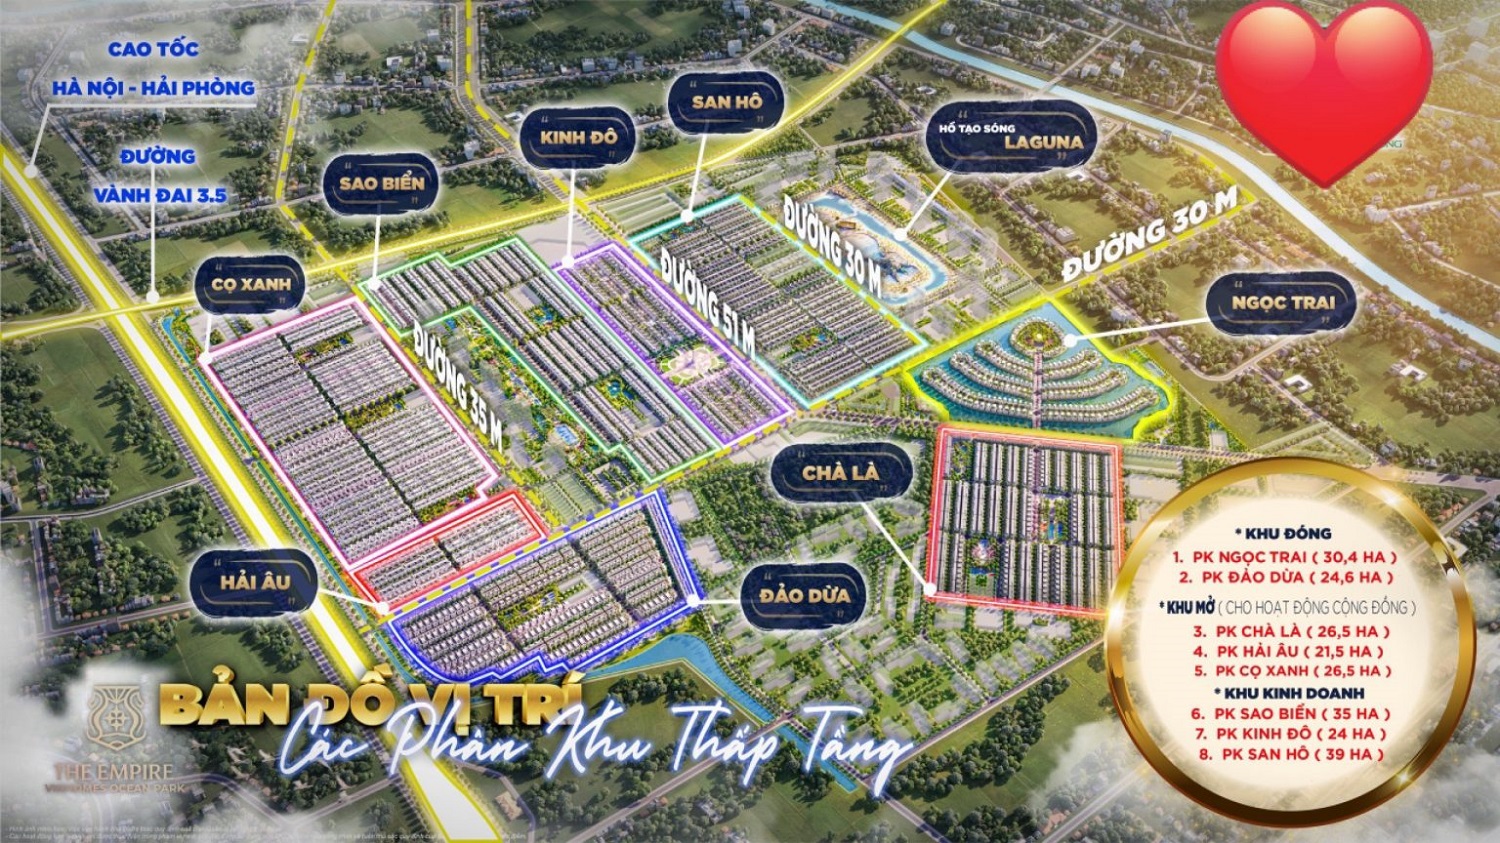 Tổng quan dự án Vinhomes The Empire đại đô thị lần đầu tiên xuất hiện tại Hưng Yên.